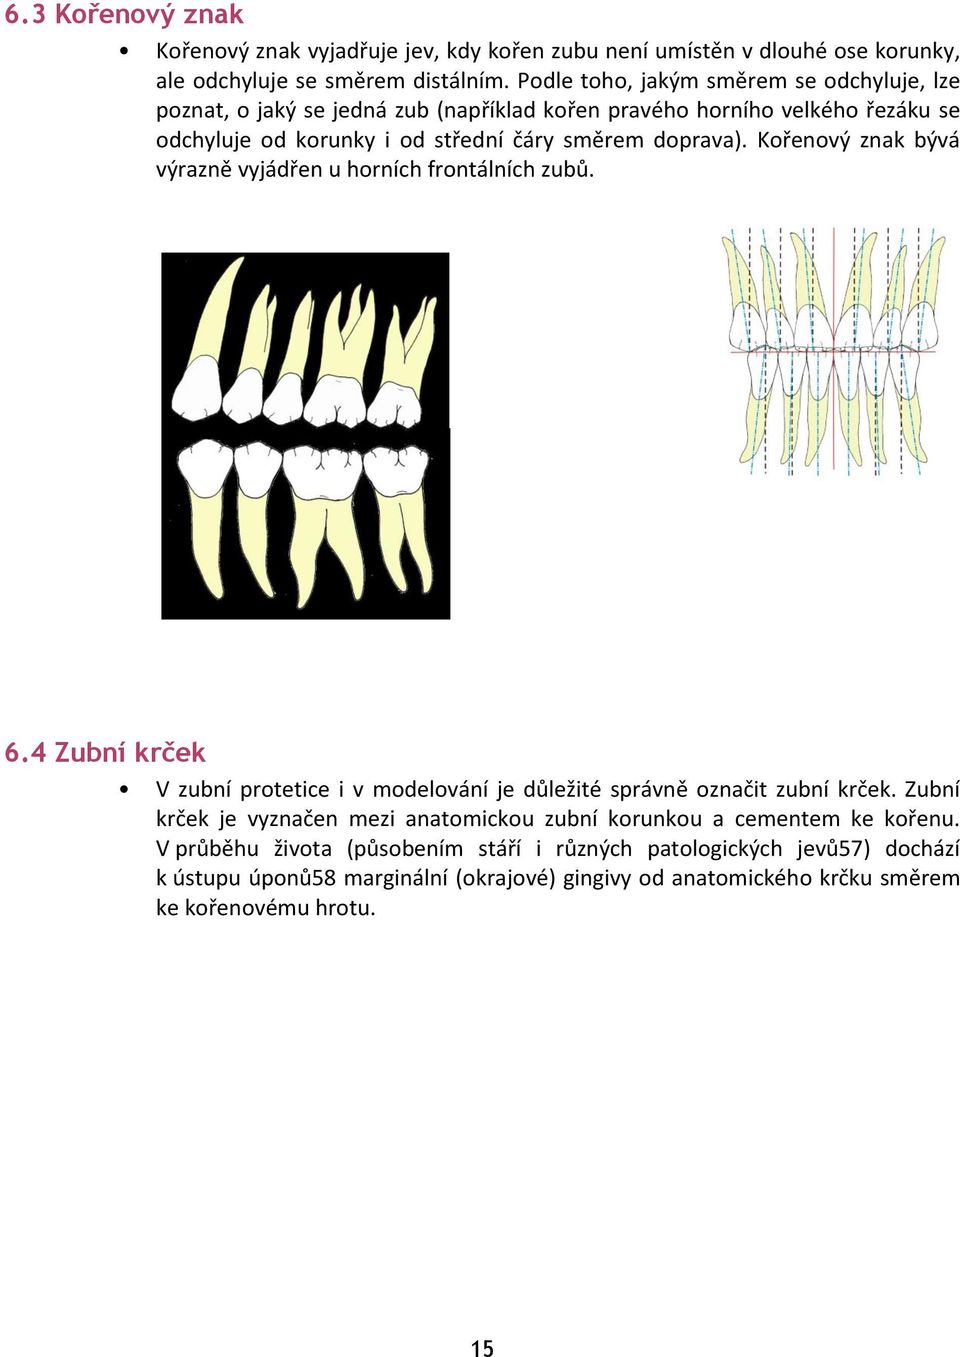 Kořenový znak bývá výrazně vyjádřen u horních frontálních zubů. 6.4 Zubní krček V zubní protetice i v modelování je důležité správně označit zubní krček.